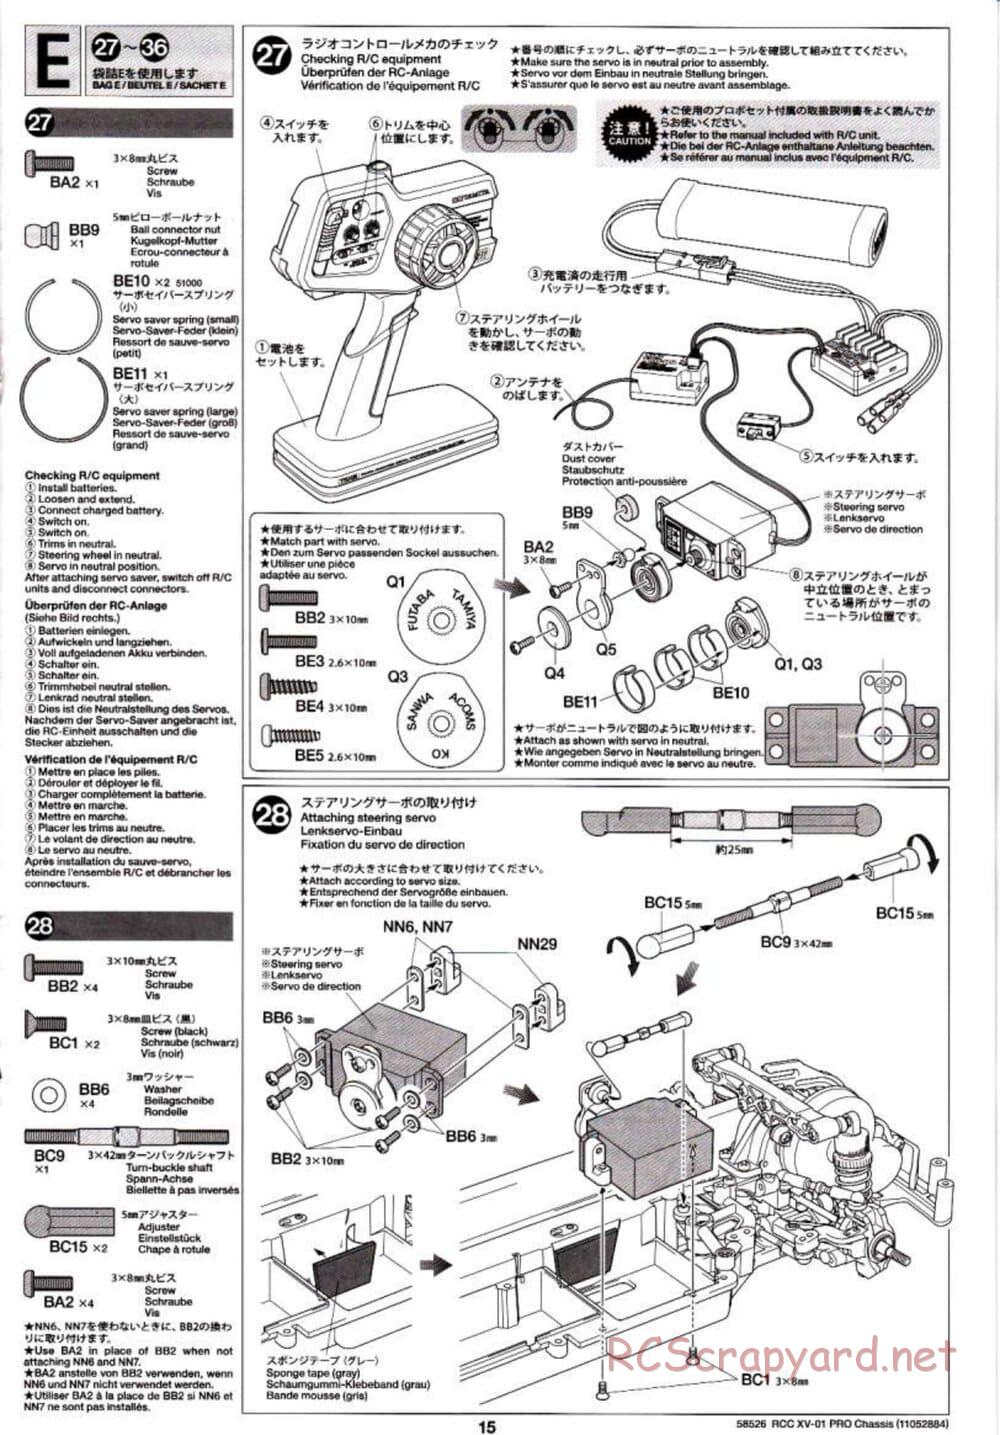 Tamiya - XV-01 PRO Chassis - Manual - Page 15